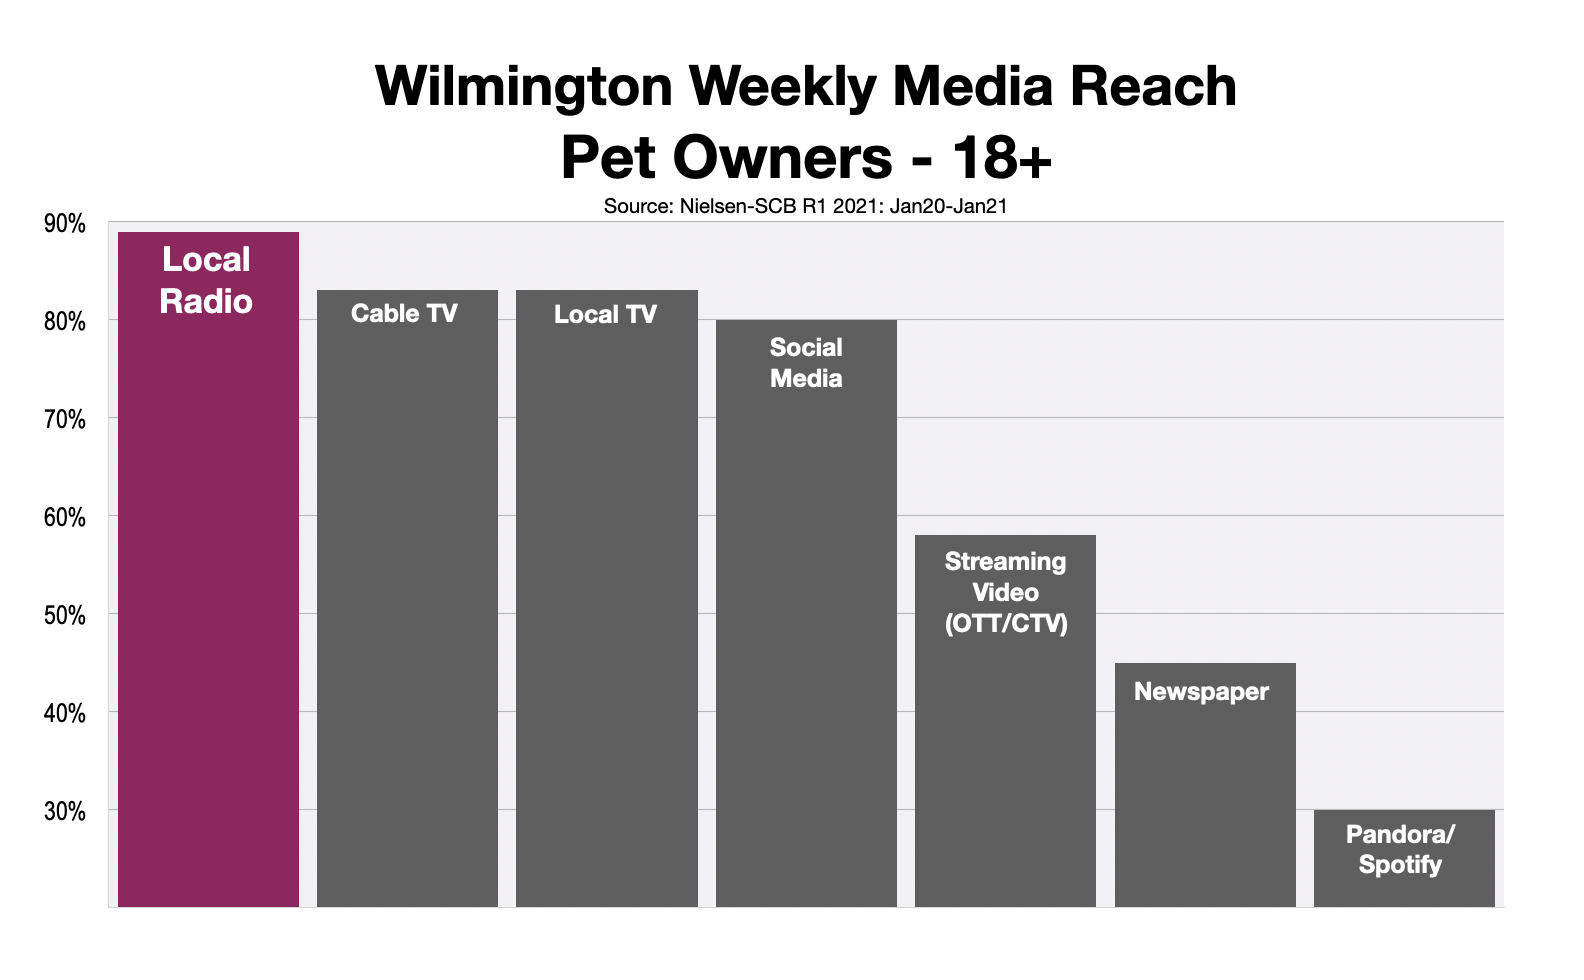 Advertising To Pet Owners In Wilmington, DE